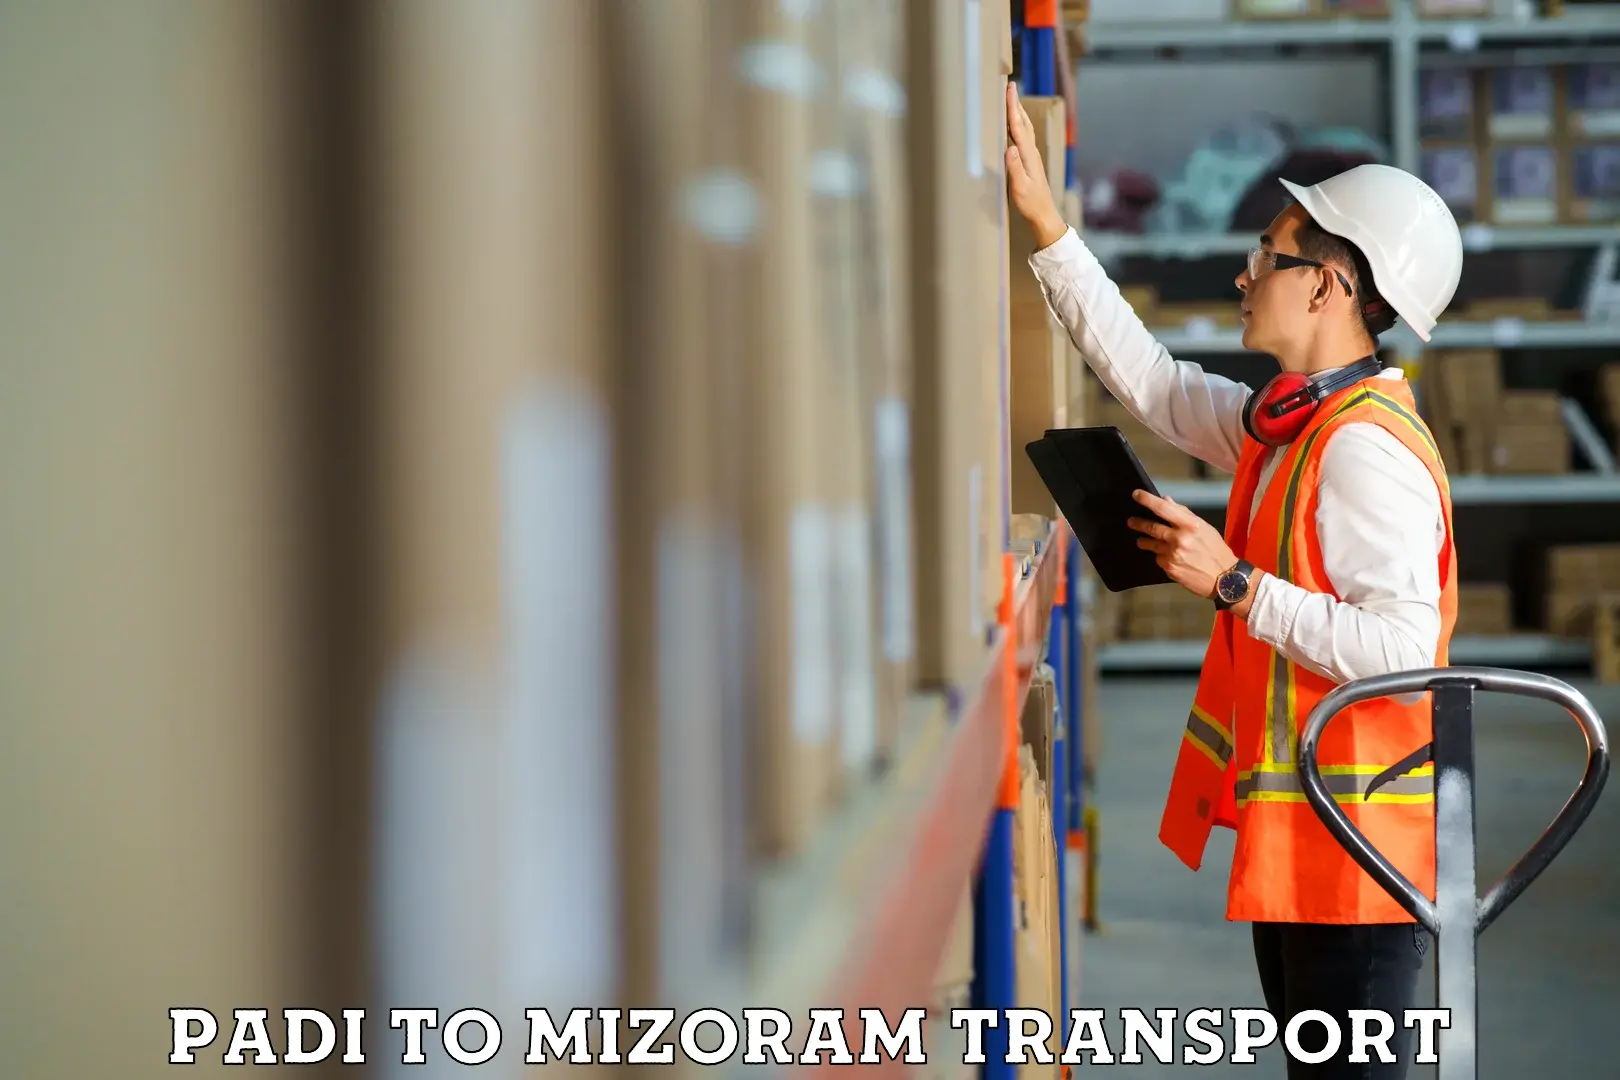 Nearby transport service Padi to Mizoram